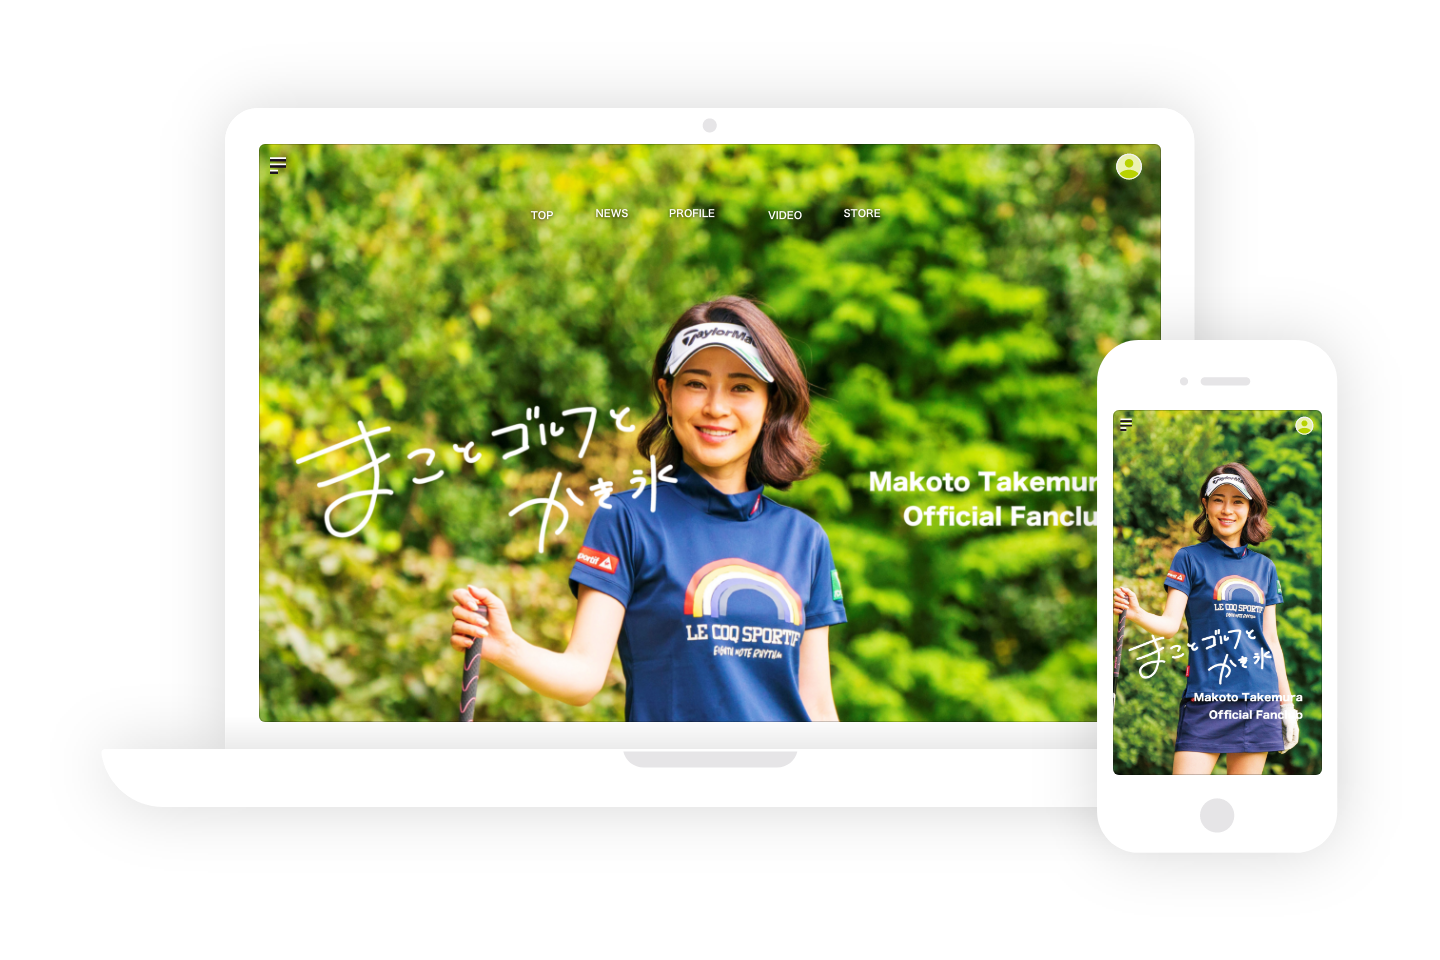 女子プロゴルファー 竹村真琴の公式ファンクラブサイトをオープン 株式会社skiyaki ファンサイト ファンクラブ ストアサイト運営